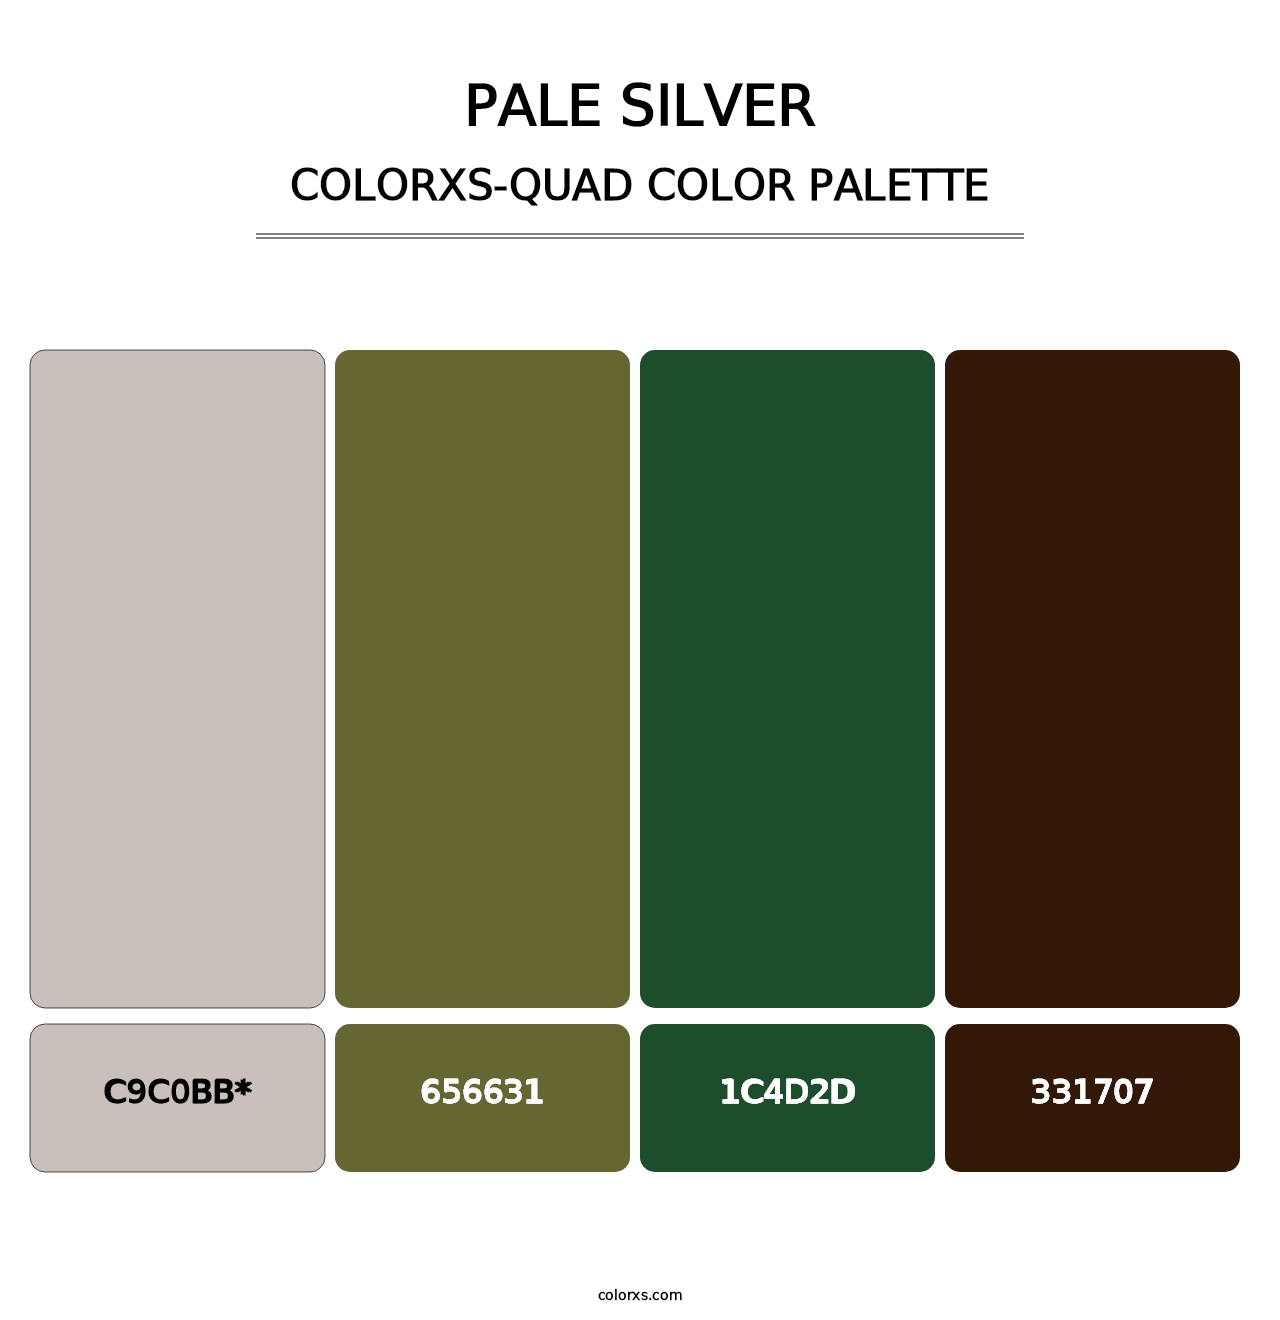 Pale Silver - Colorxs Quad Palette